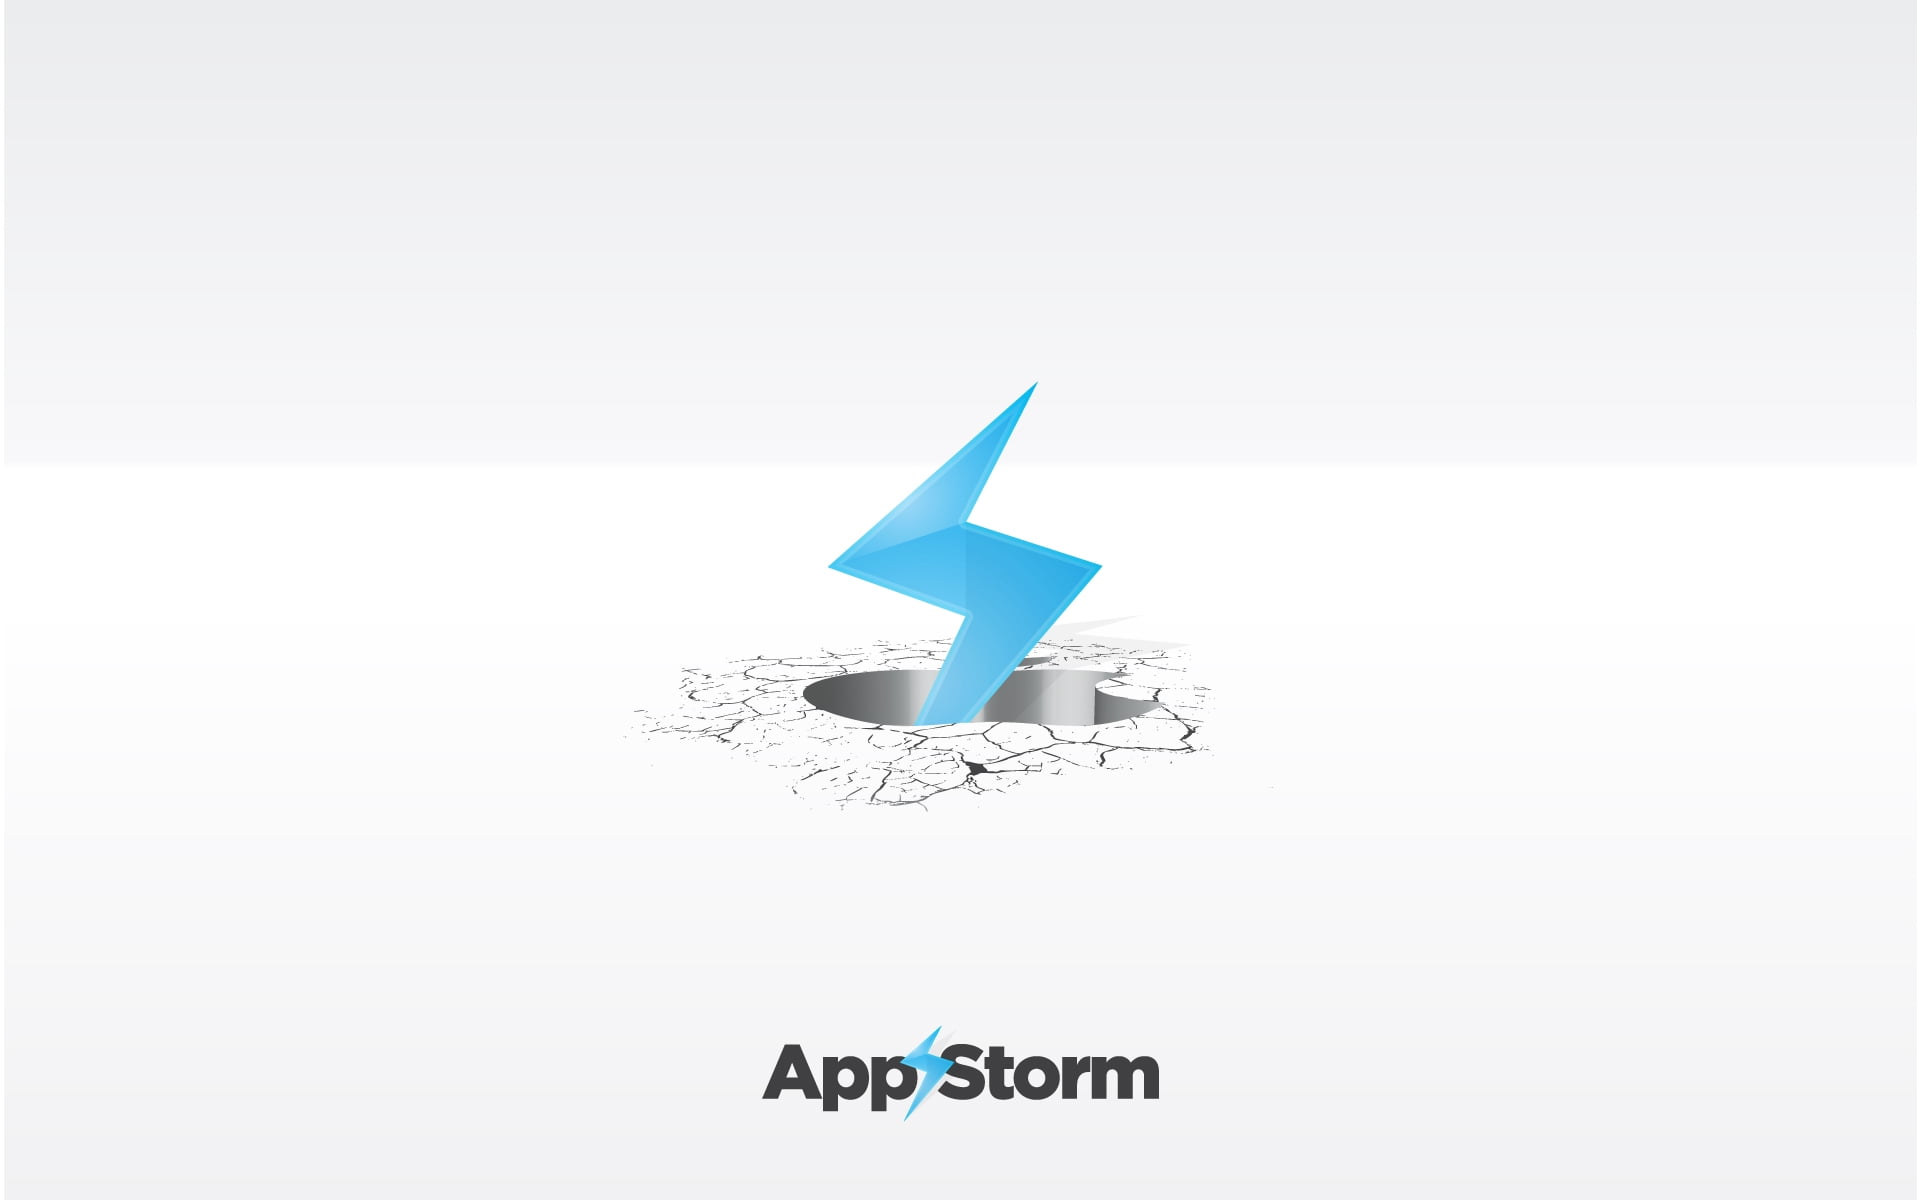 App Storm logo